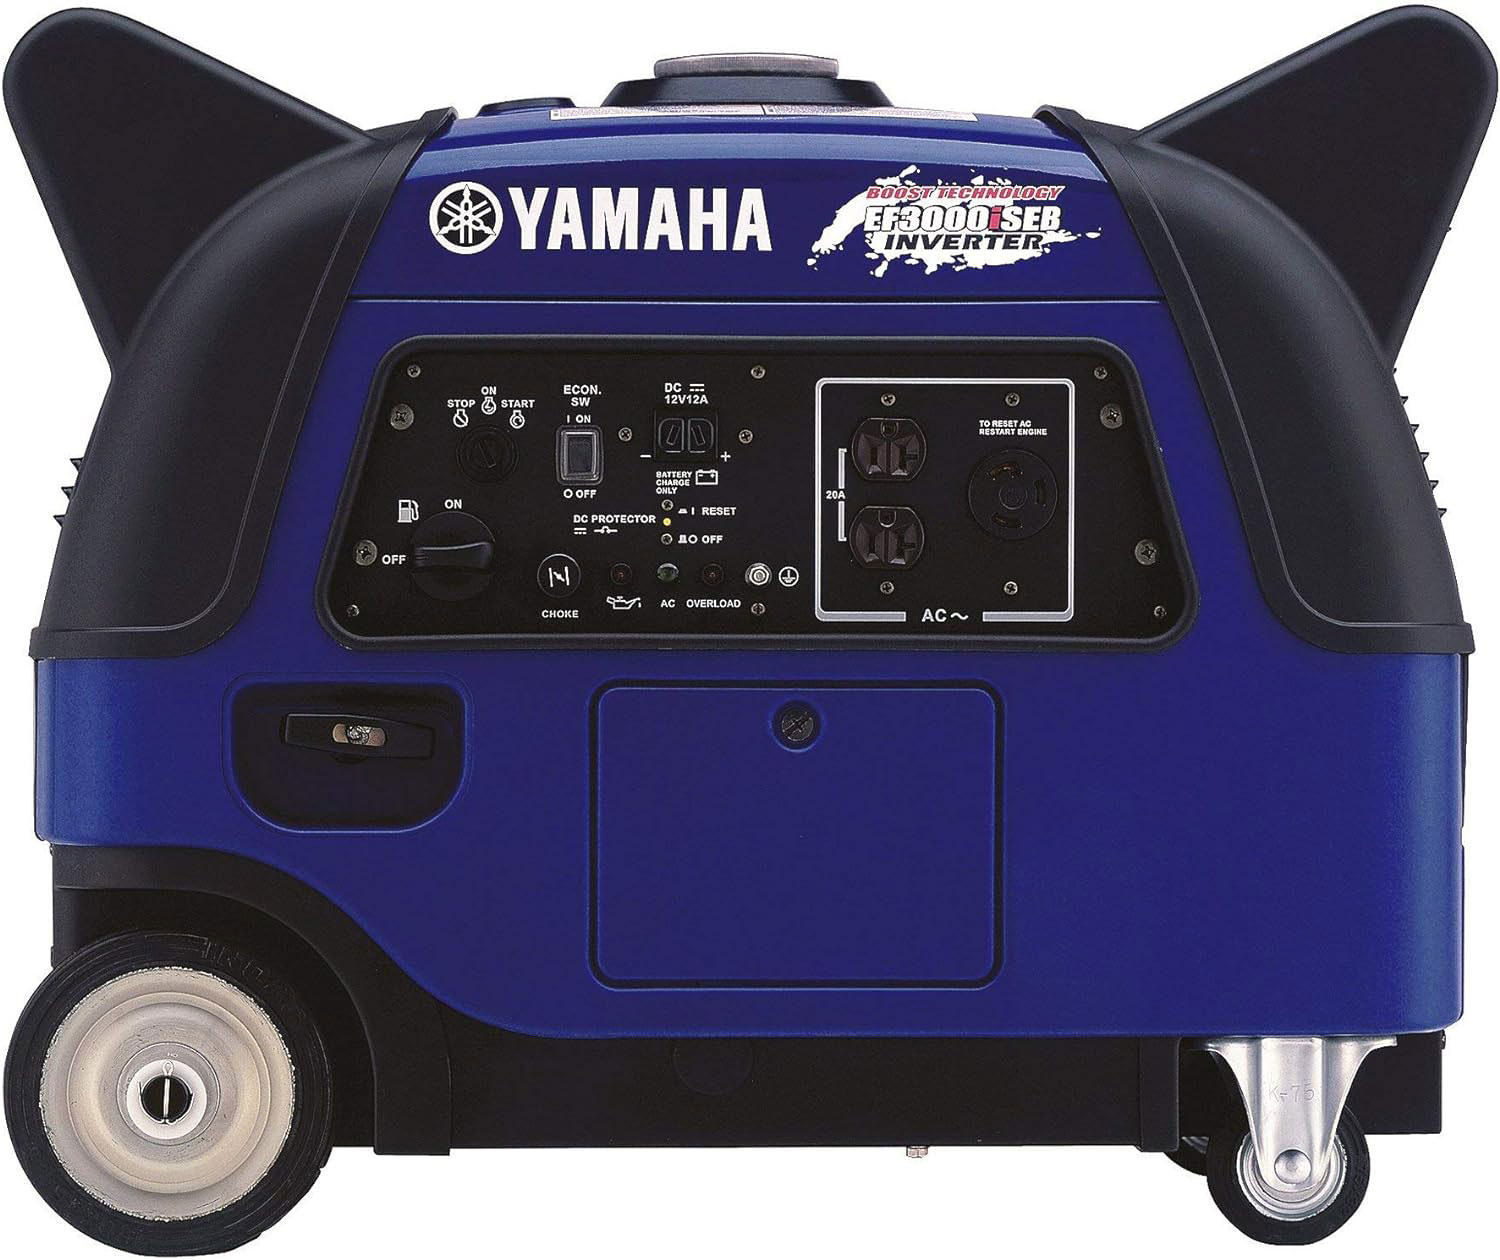 Yamaha EF3000iSEB: Revolutionizing Portable Power Solutions